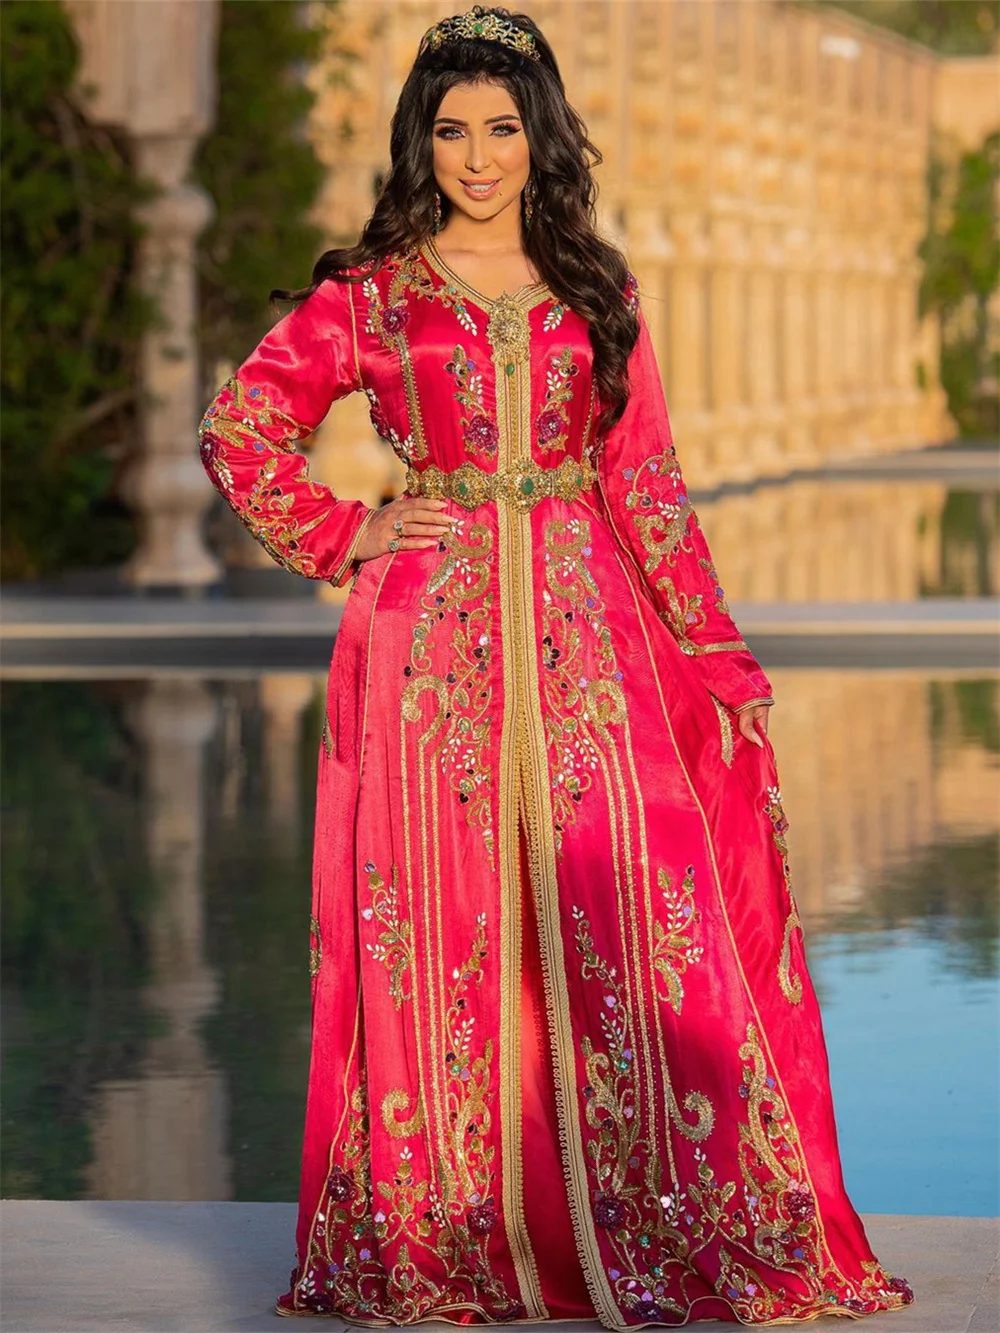 

Афганские вечерние платья с длинным рукавом, классическое ТРАПЕЦИЕВИДНОЕ свадебное платье, Золотая аппликация, длиной до пола, женское платье, платье для невесты